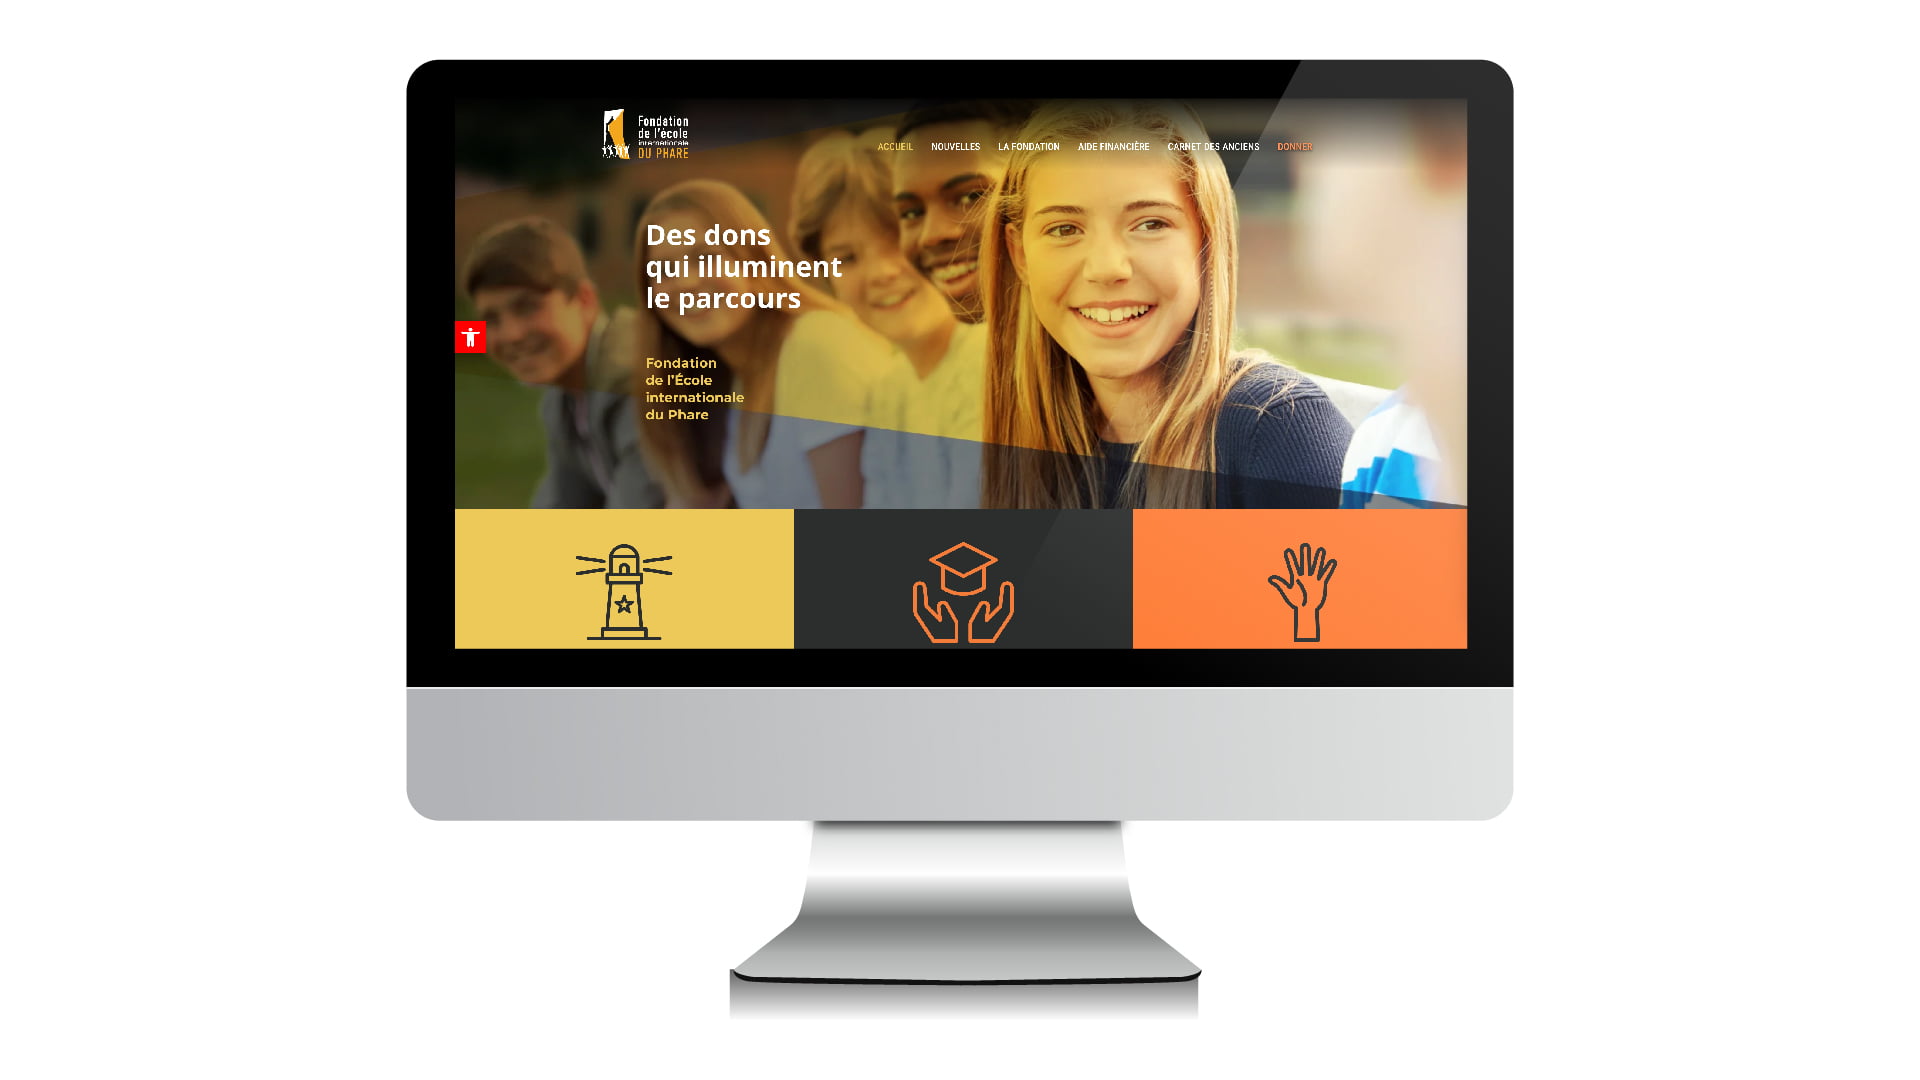 Site internet de la Fondation de l'École internationale du Phare de Sherbrooke